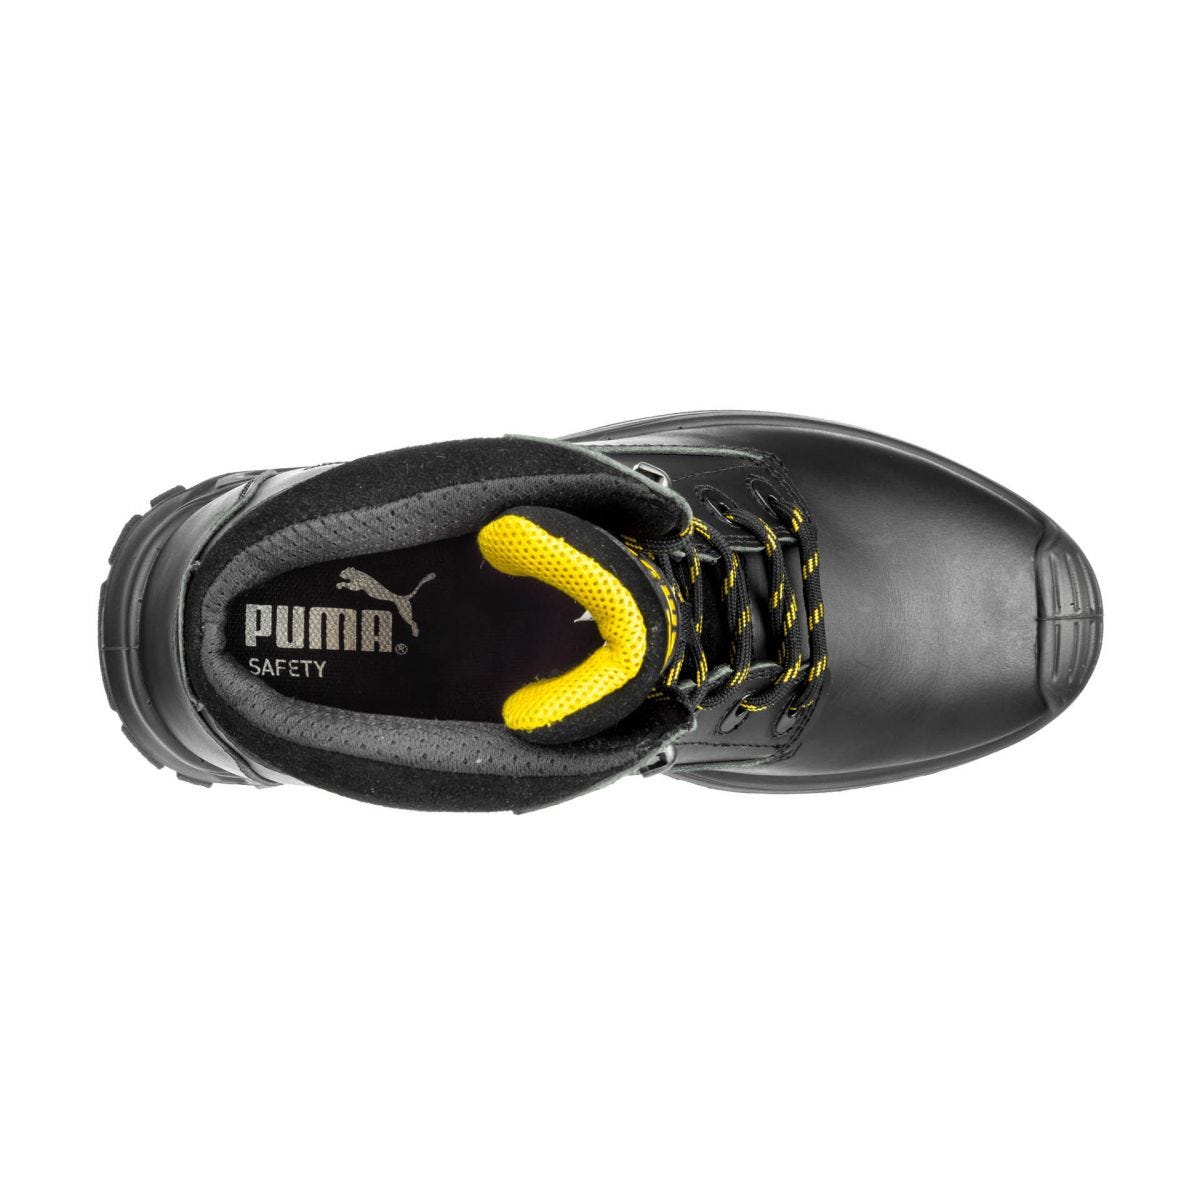 Chaussures de sécurité Borneo mid S3 HRO SRC noir - Puma - Taille 41 2